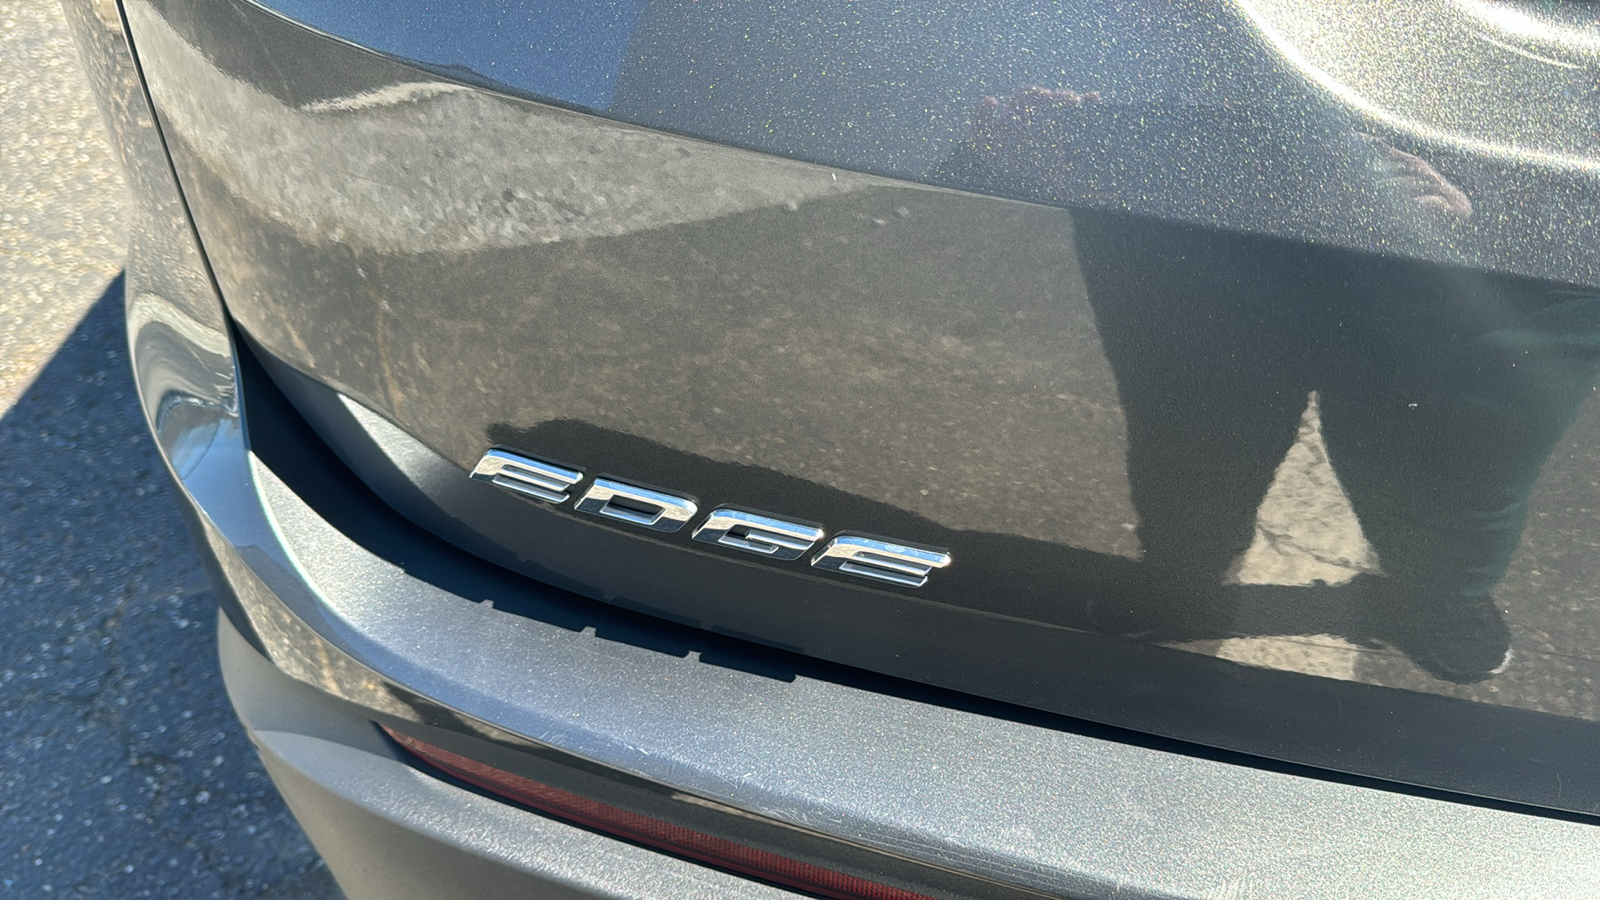 2015 Ford Edge Titanium 10